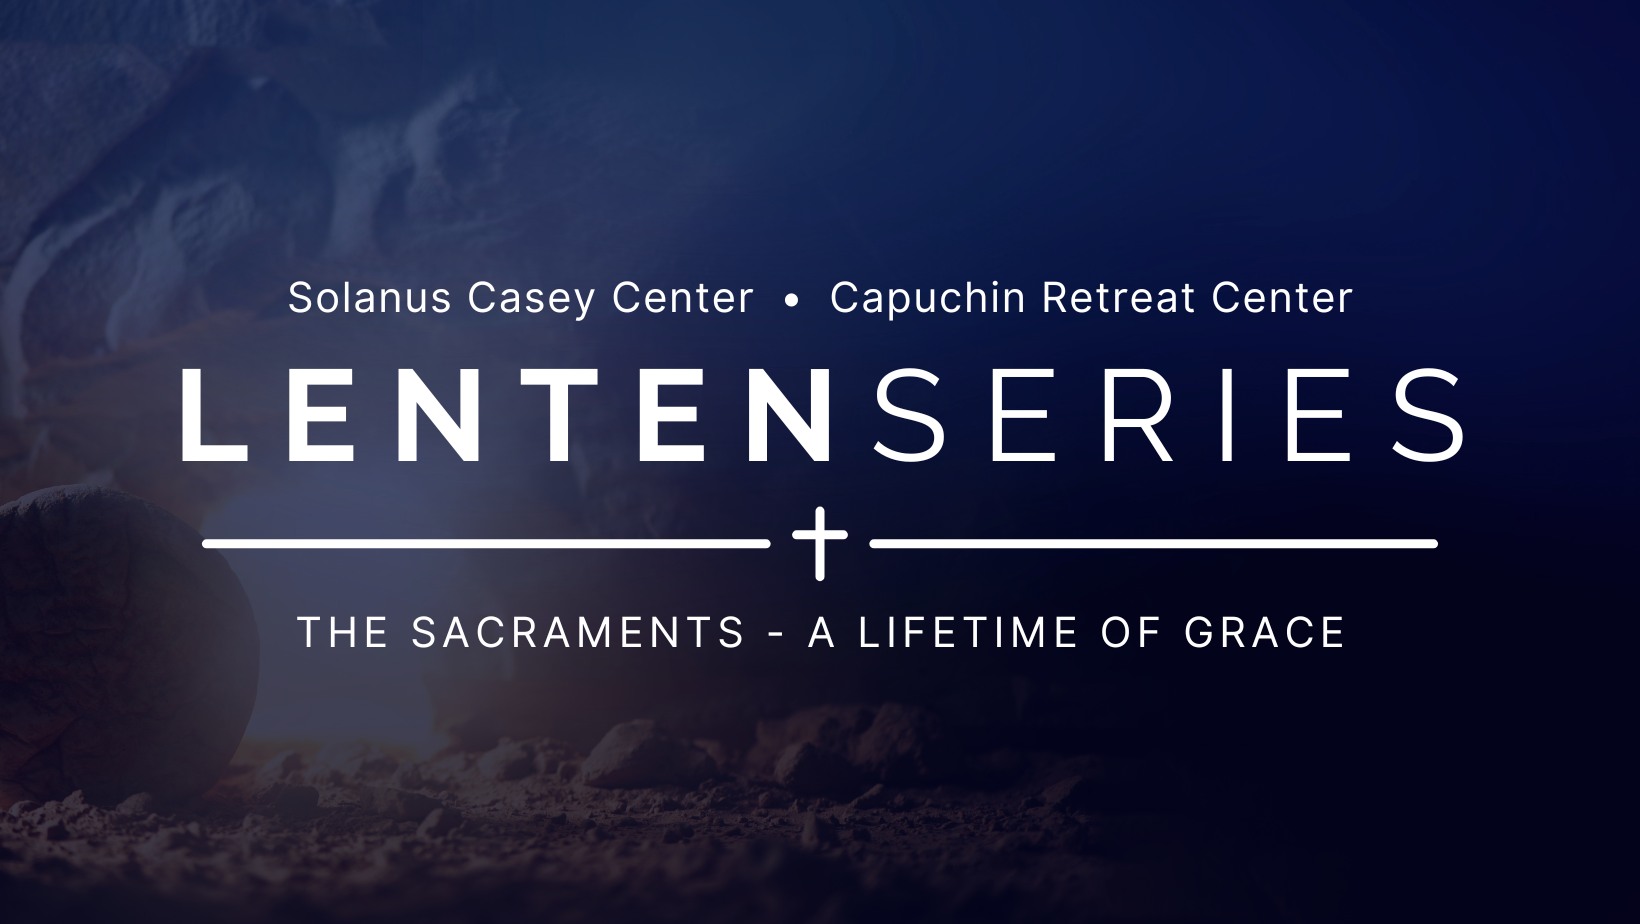 2024 Lenten Series: The Sacraments – A Lifetime of Grace